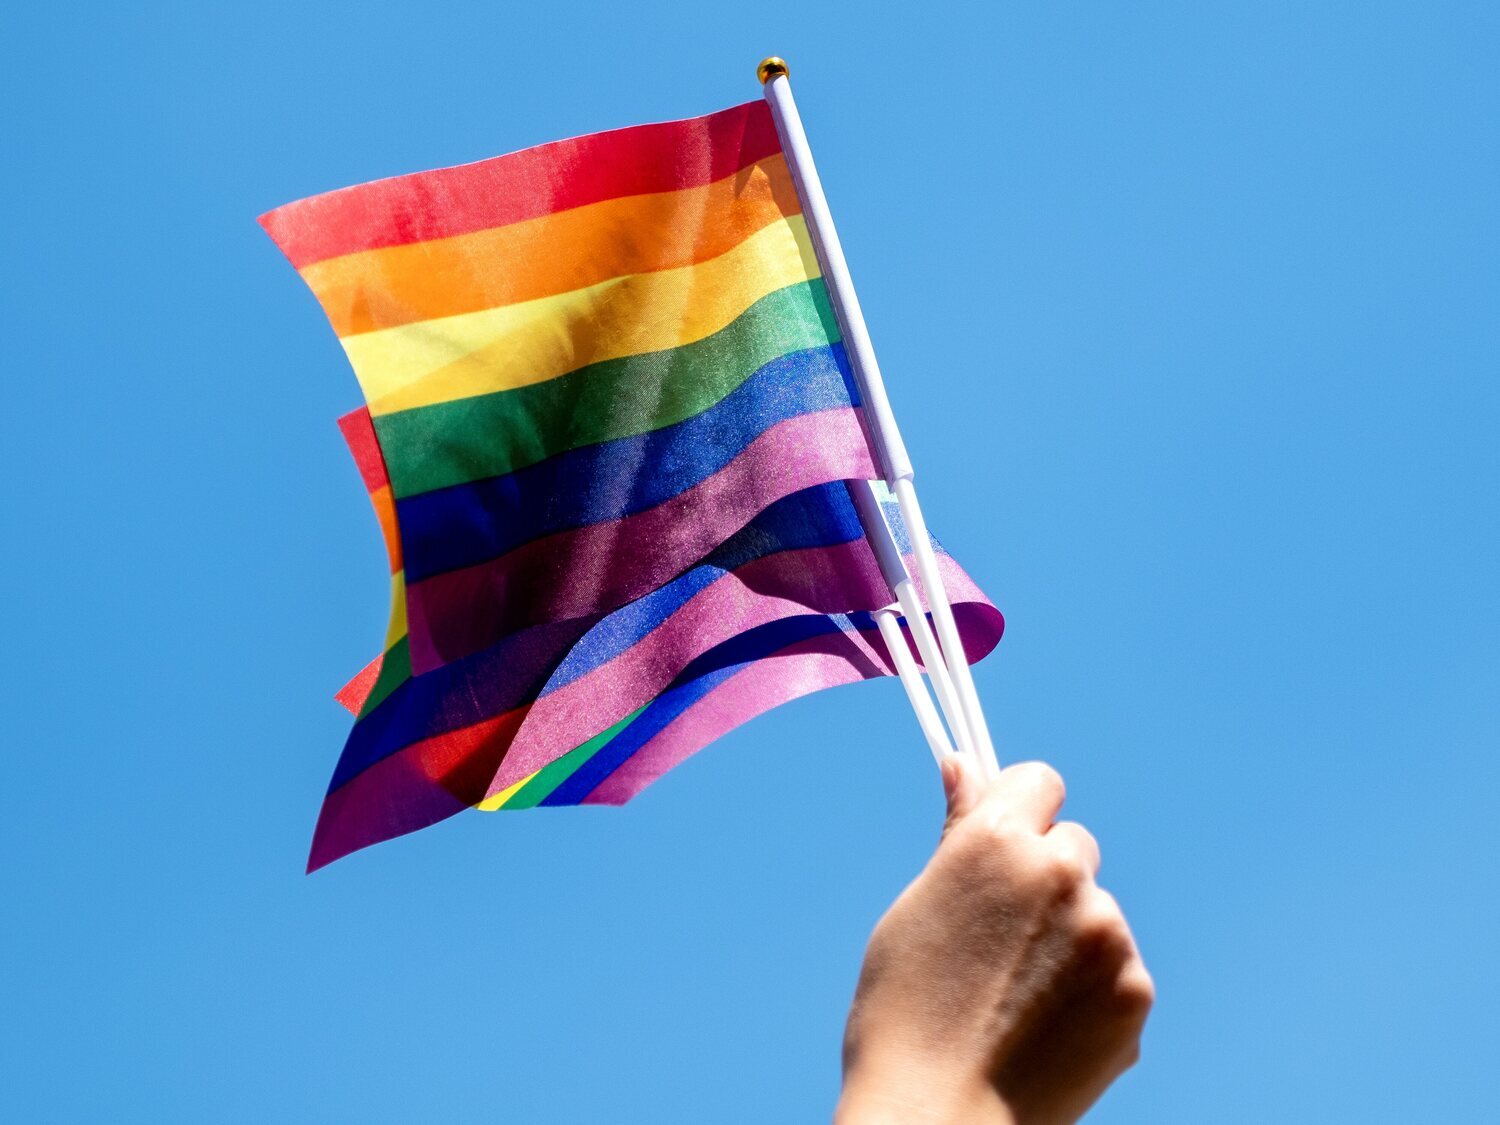 Sancionado un profesor por vulnerar en clase la ley contra la LGTBIfobia: "¿Quién es del club del pepino?"